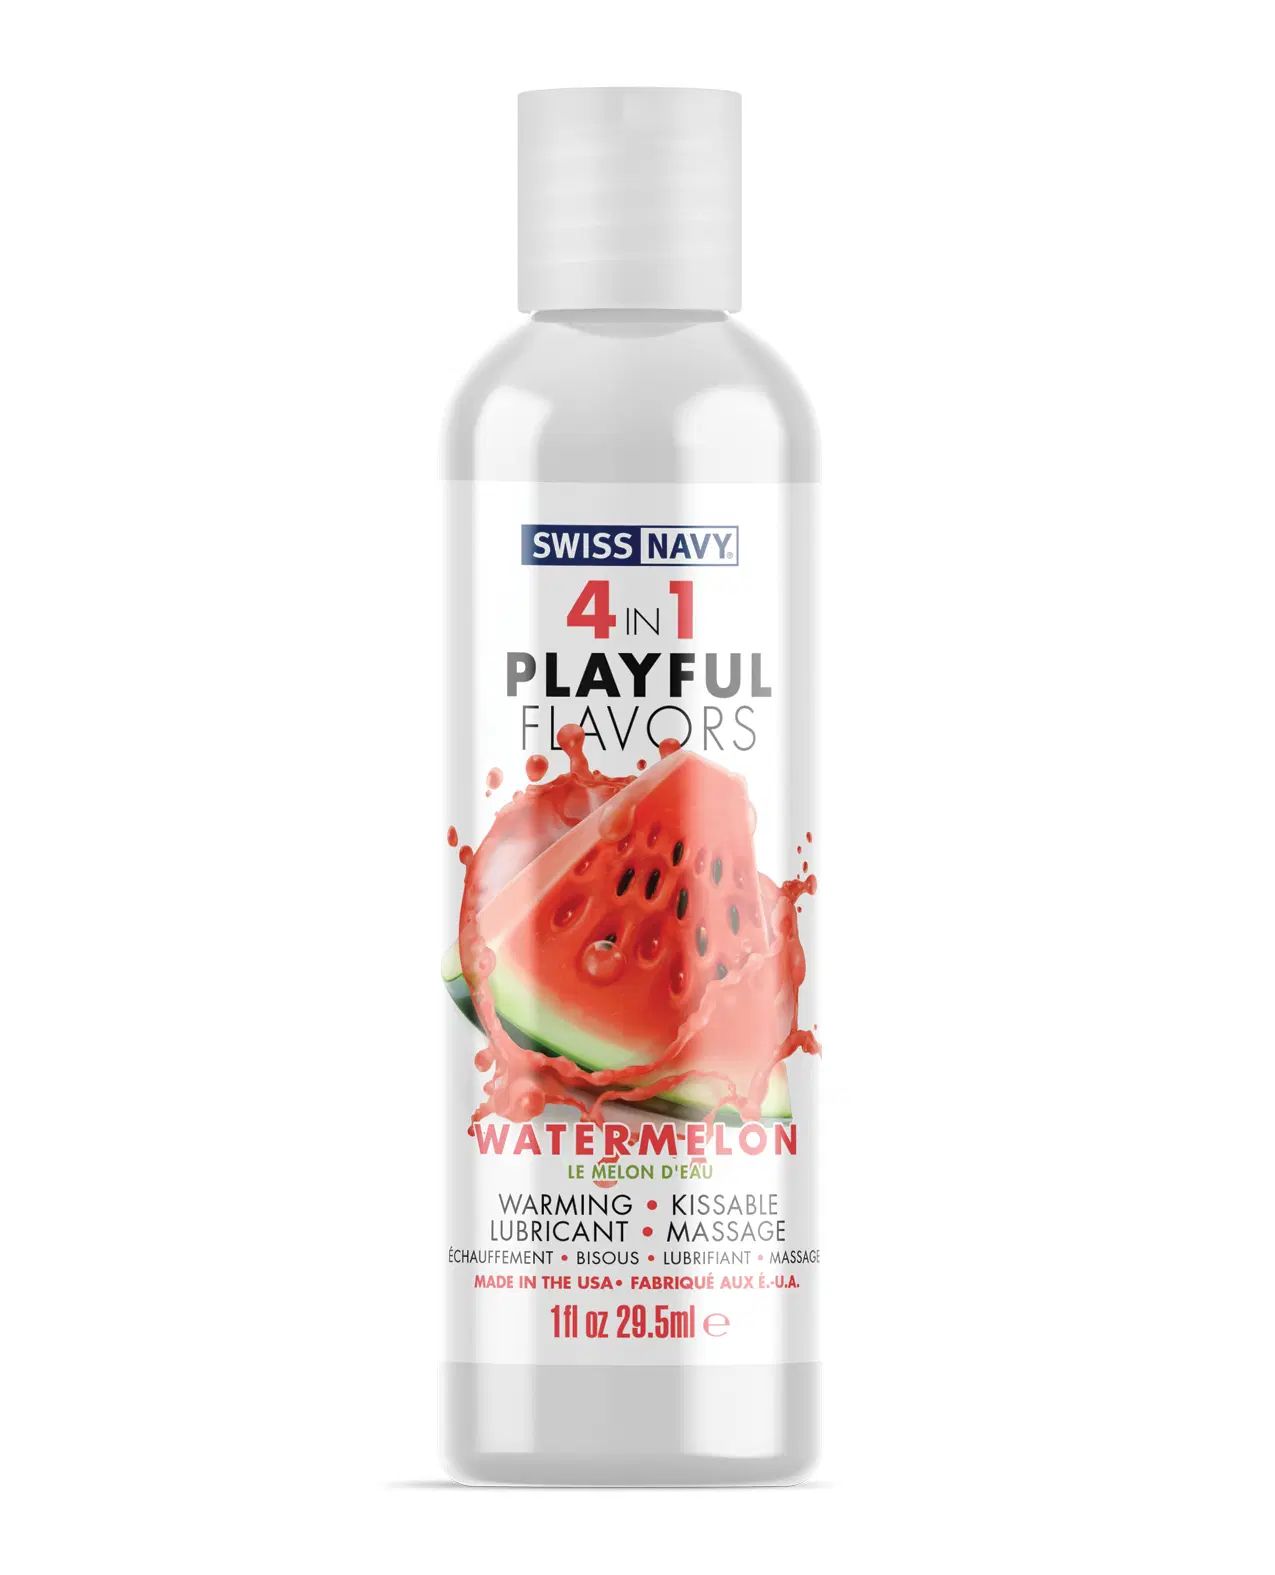 4-в-1 Playful Flavors - игривое удовольствие во всех его проявлениях! Съедобный массажный гель с согревающим эффектом, дарящий непревзойденное скольжение. Подходит для эротического массажа и в качестве лубриканта, в том числе для орального секса. <br><br> Watermelon  обладает прекрасным вкусом и насыщенным ароматом арбуза, чтобы соблазнить ваши чувства и вкусовые рецепторы! Потрите или подуйте на место нанесения, чтобы высвободить манящее тепло. Или насладитесь вкусом, добавив гель в массаж или используйте в качестве смазки. Watermelon 4-in-1 Playful Flavors очаровывает и пробуждает все ваши чувства! <br><br> Playful Flavors - это смазка для вашего образа жизни. От игривой прелюдии до сюрреалистического секса, 4-в-1 Playful Flavors позволяет легко добавить больше игры в вашу личную жизнь.